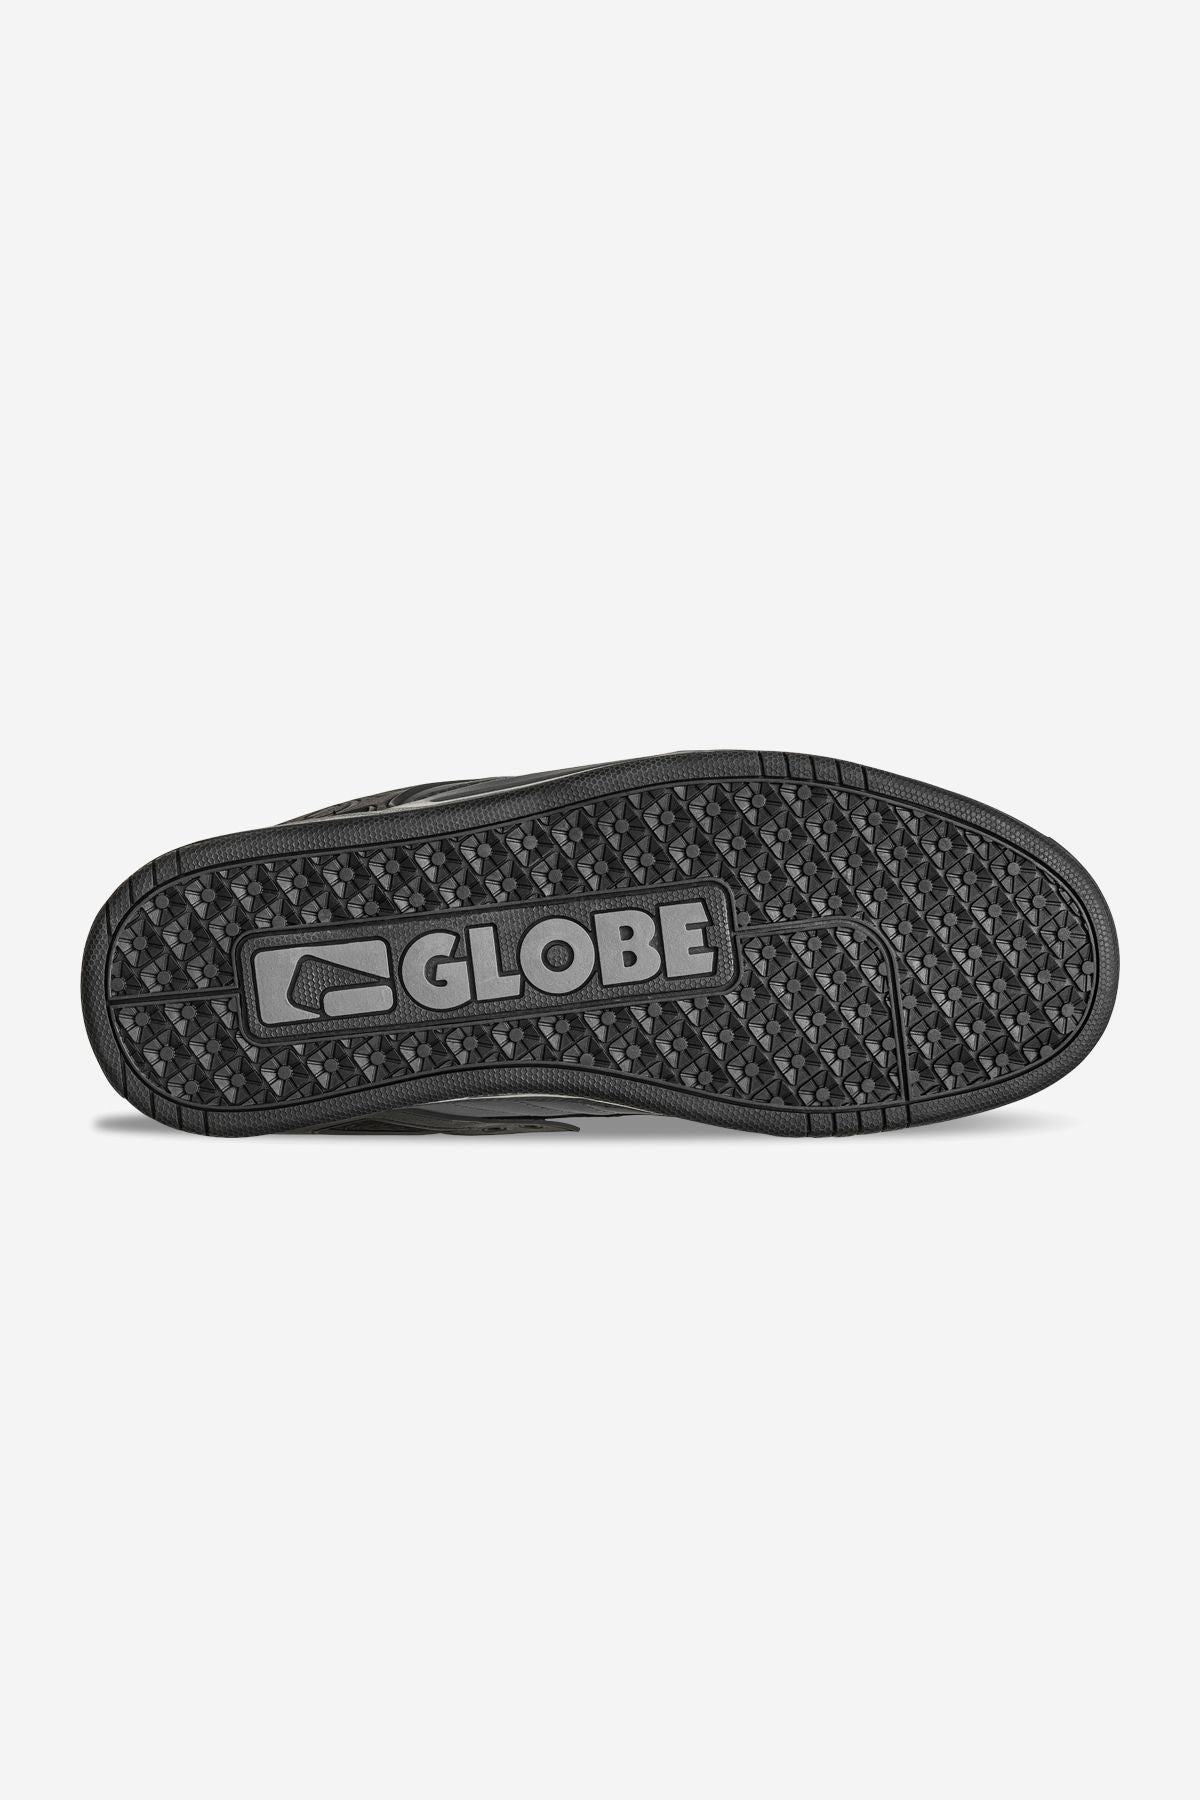 Globe - Tilt - Dark Shadow/Phantom - Skate Shoes